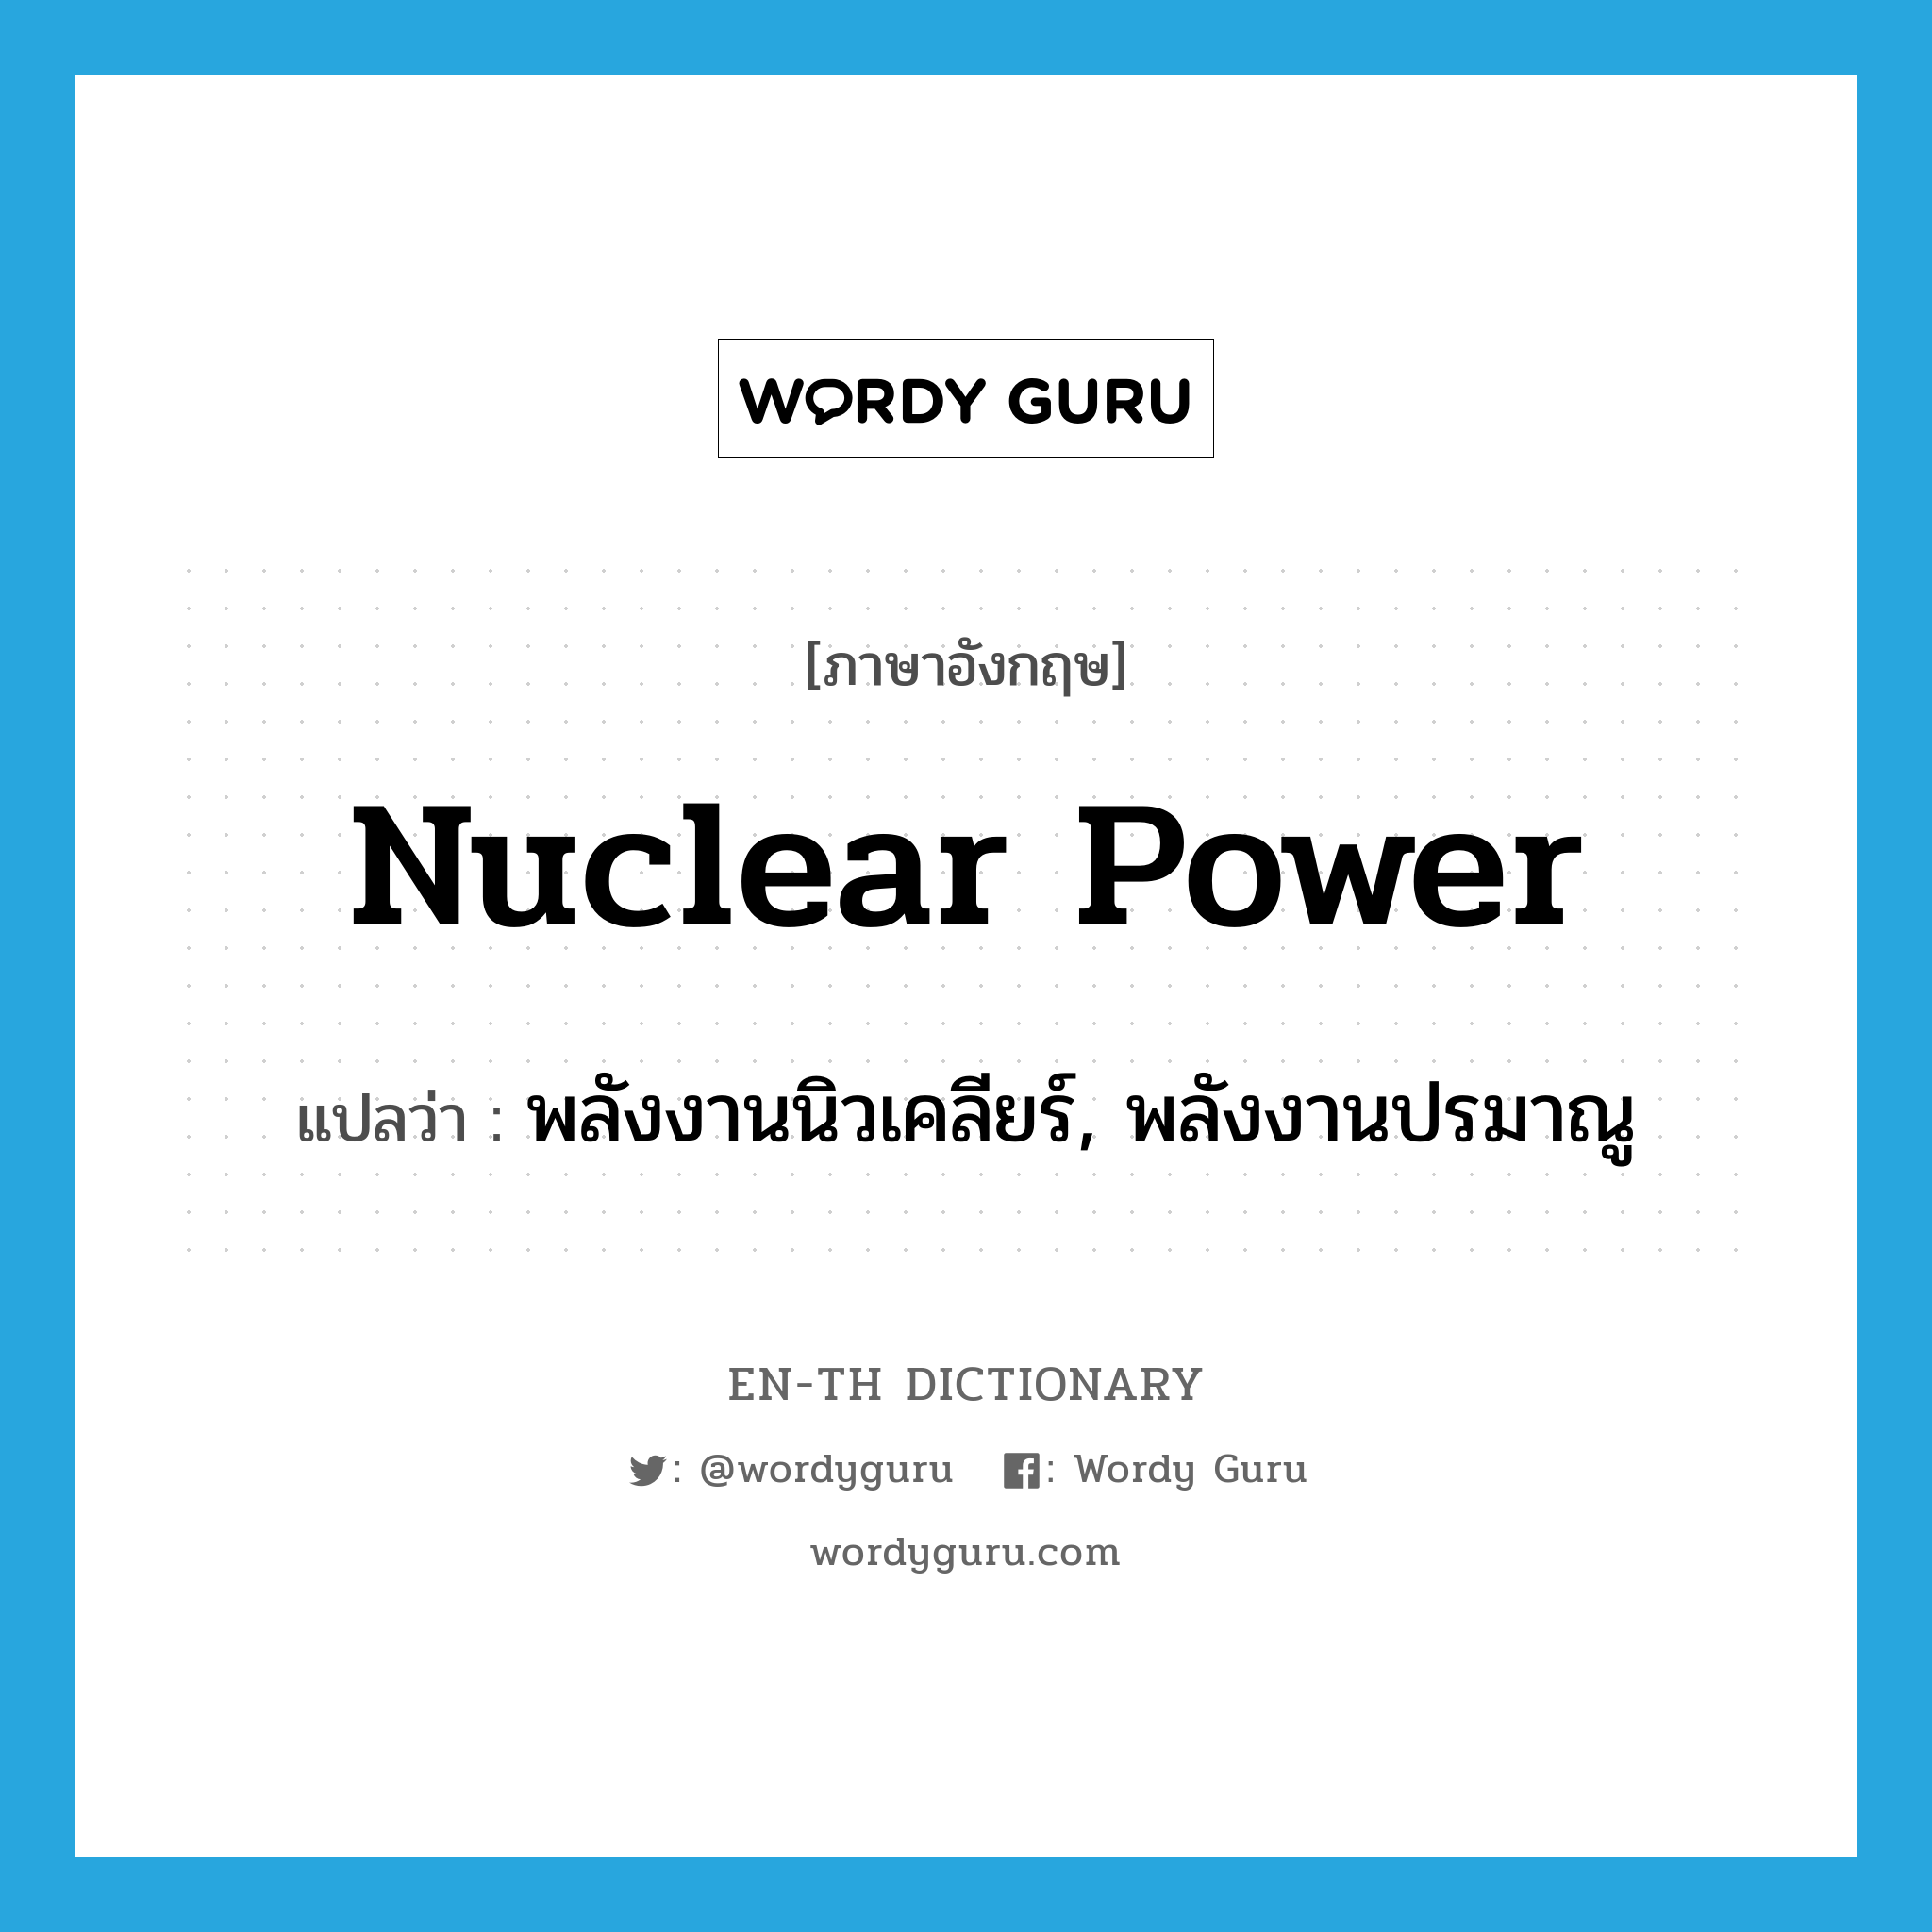 nuclear power แปลว่า?, คำศัพท์ภาษาอังกฤษ nuclear power แปลว่า พลังงานนิวเคลียร์, พลังงานปรมาณู ประเภท N หมวด N